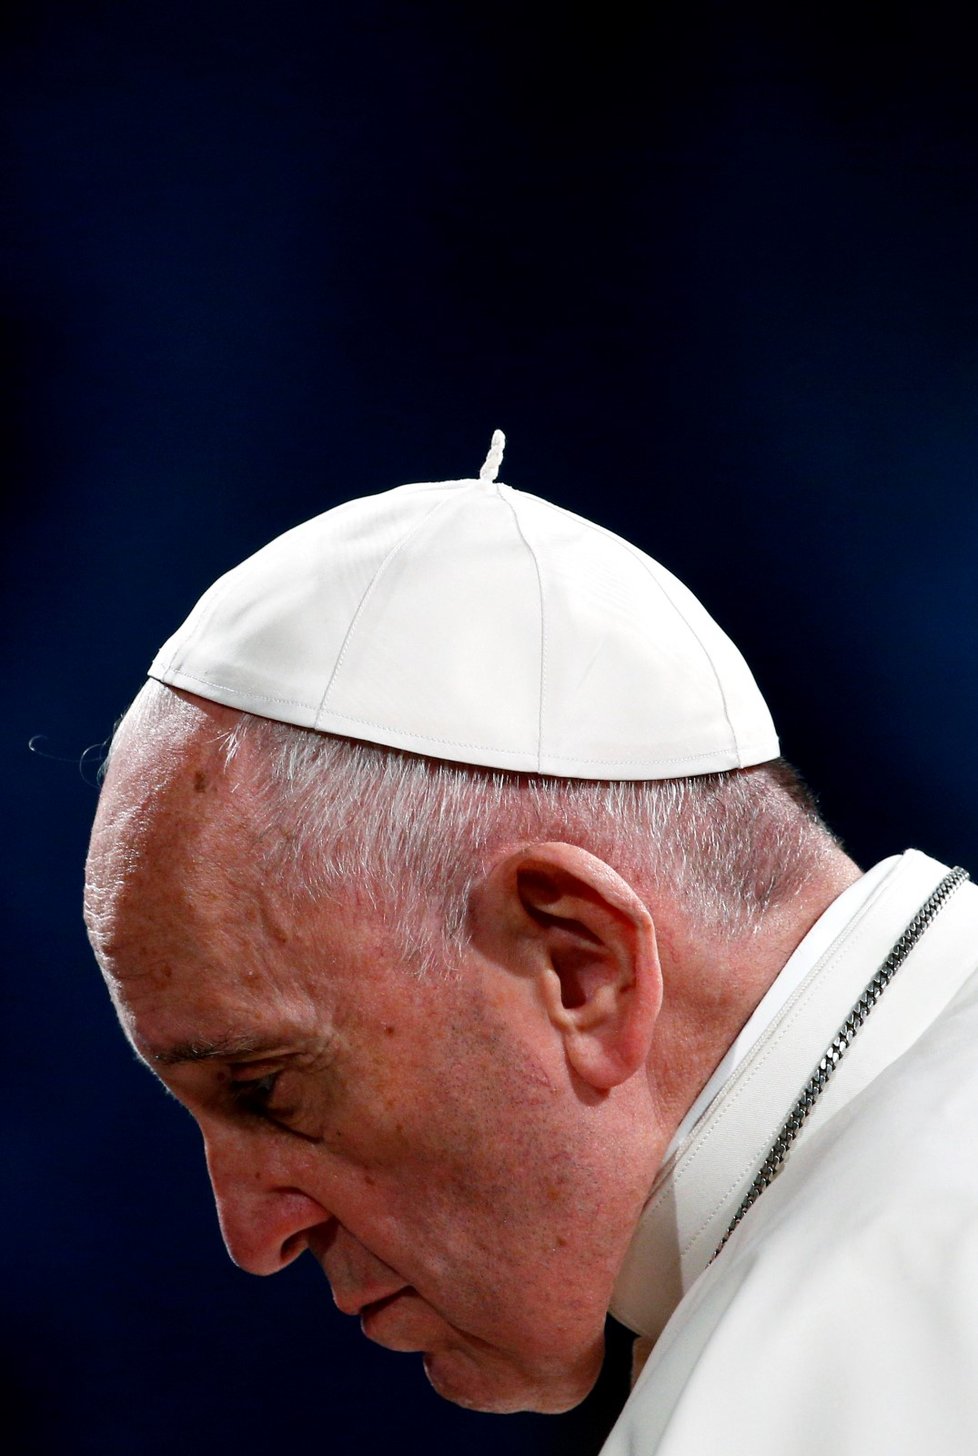 Papež na Velký pátek promluvil před Koloseem v Římě o utrpení (19. 4. 2019)